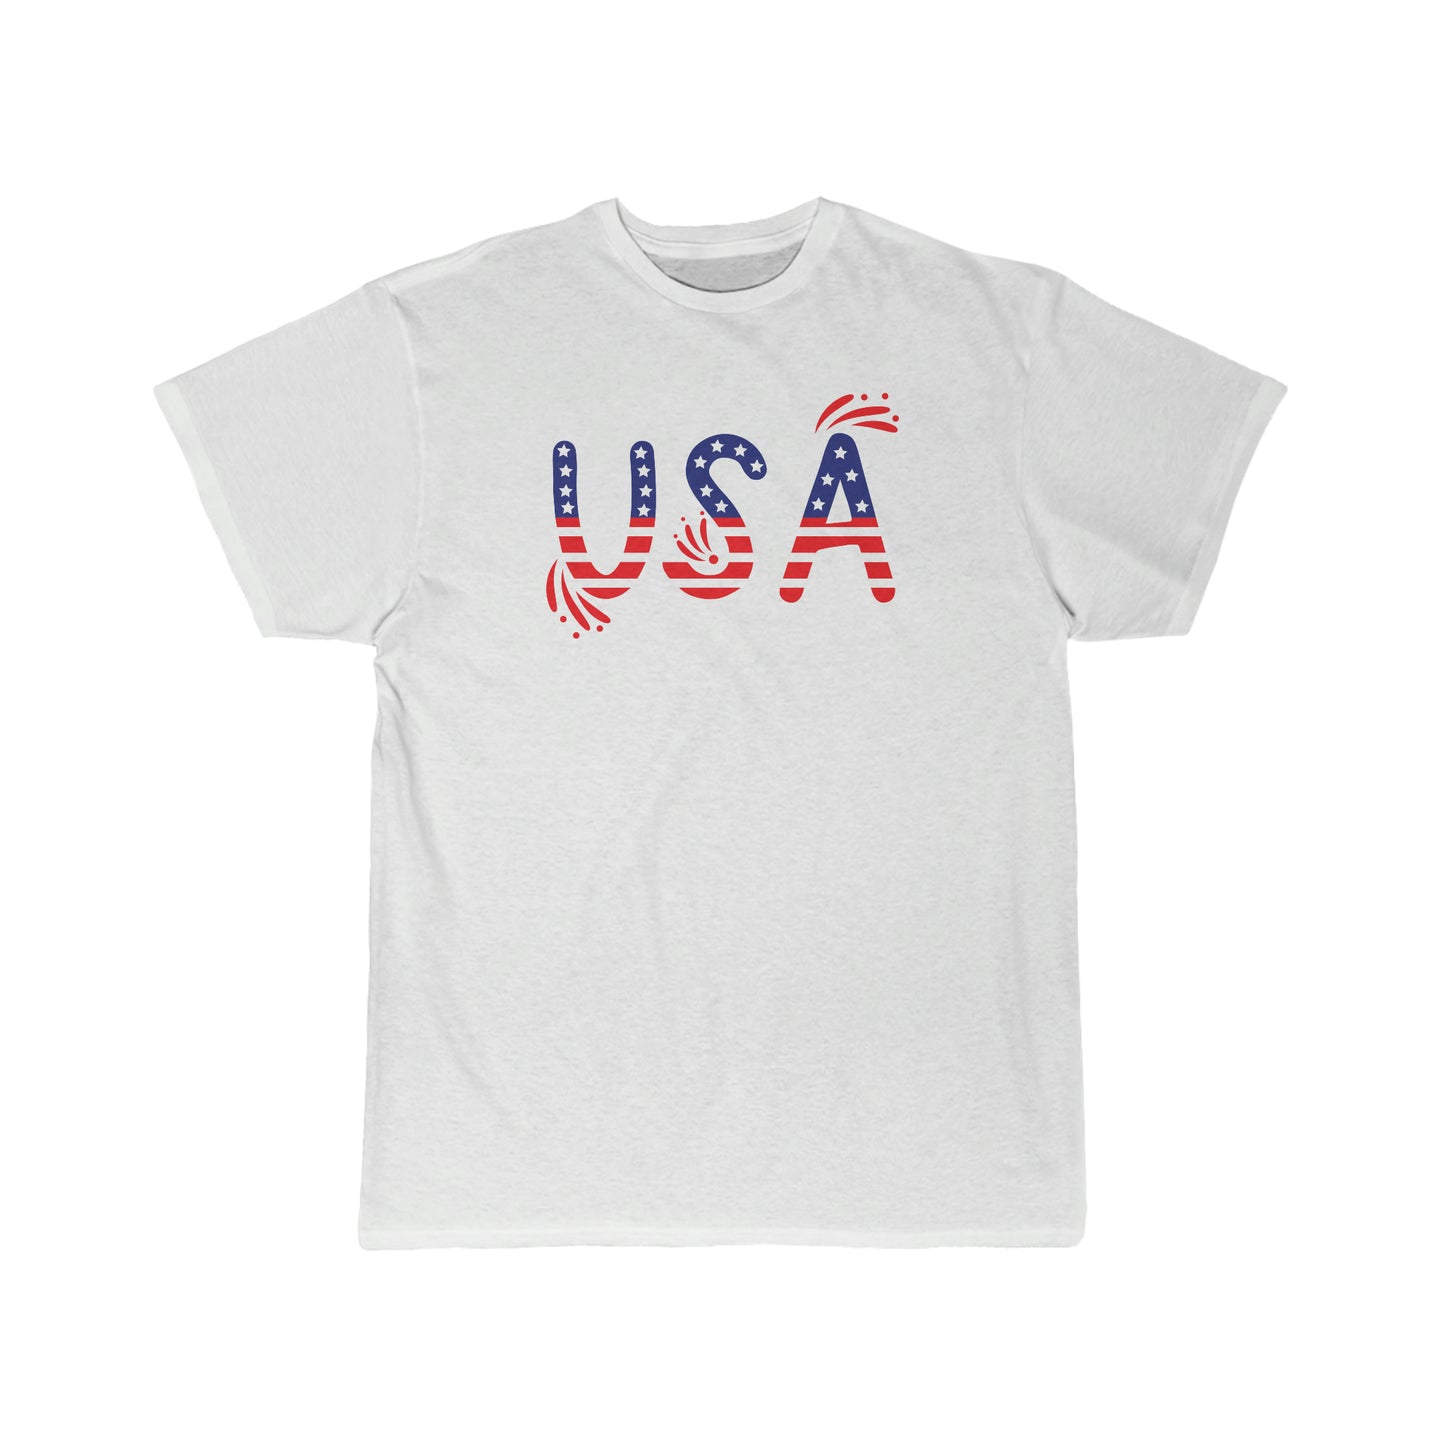 USA Flag Shirt, 4th of July Shirt, Big USA T-shirt, USA Comfort Colors Shirt, Comfort Colors USA Flag Tee, USA Comfort Colors Tee, Usa Shirt Men's Short Sleeve Tee